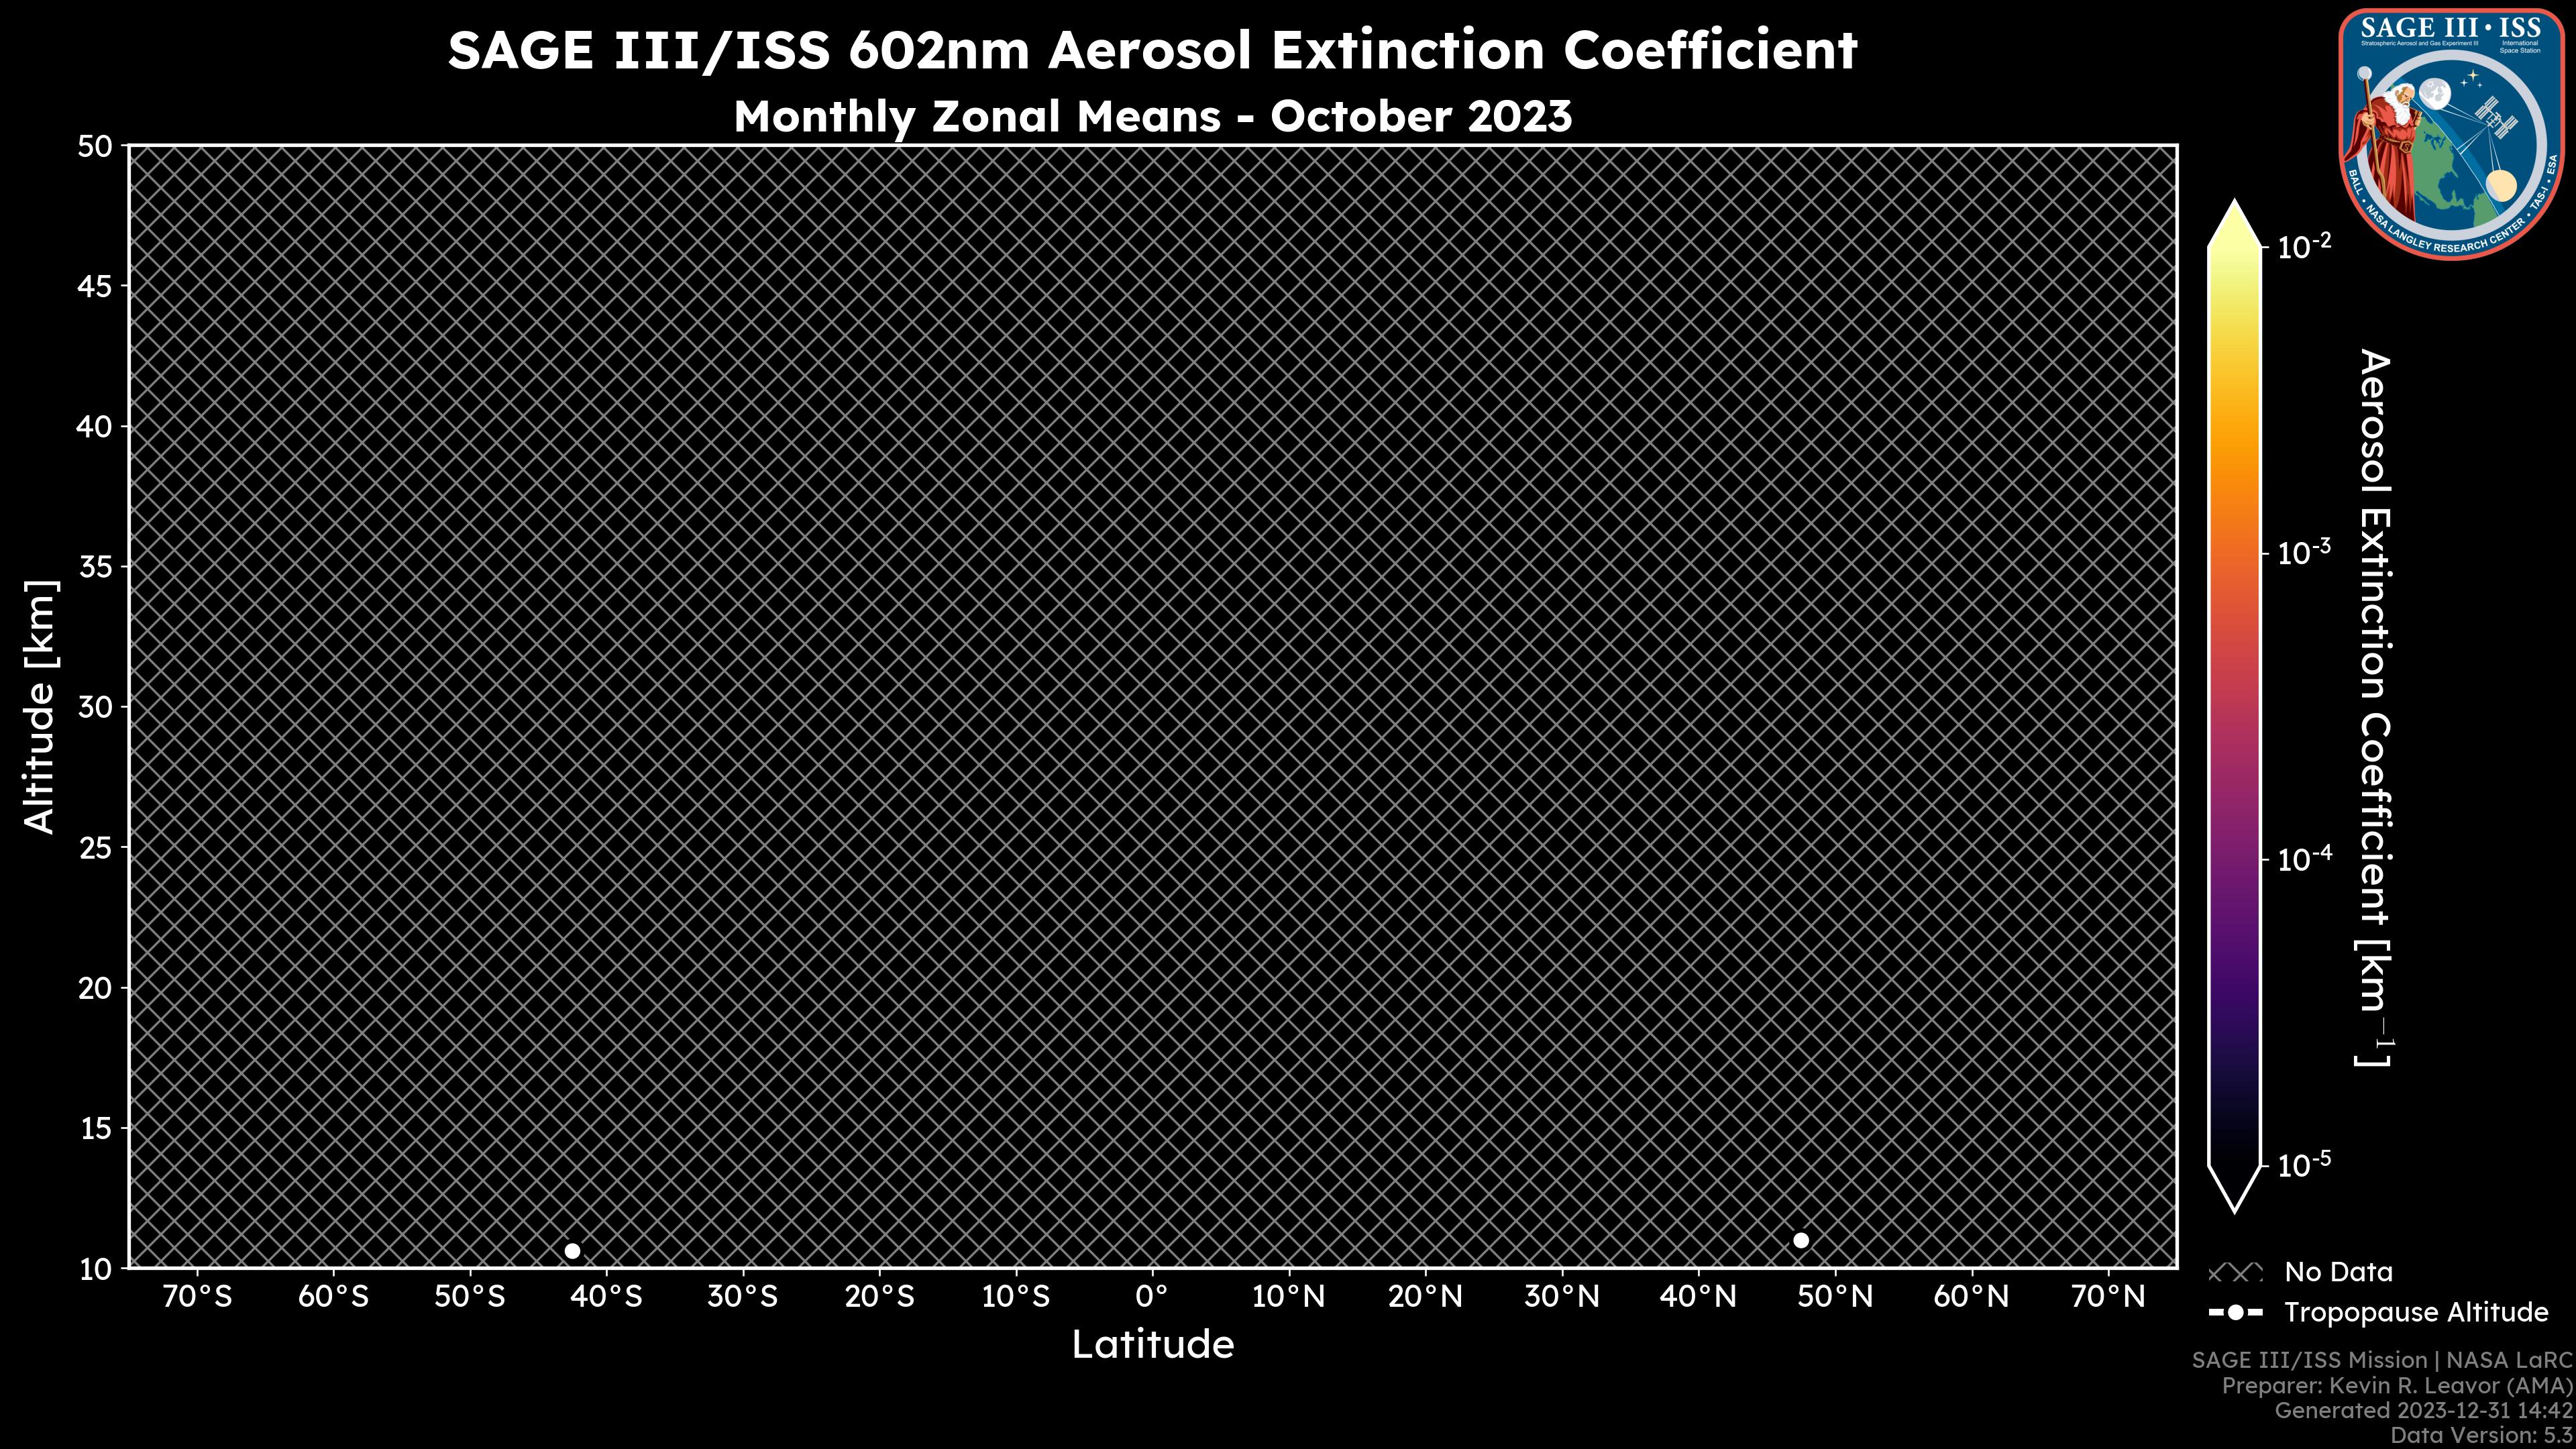 602nm Aerosol Extinction Coefficient